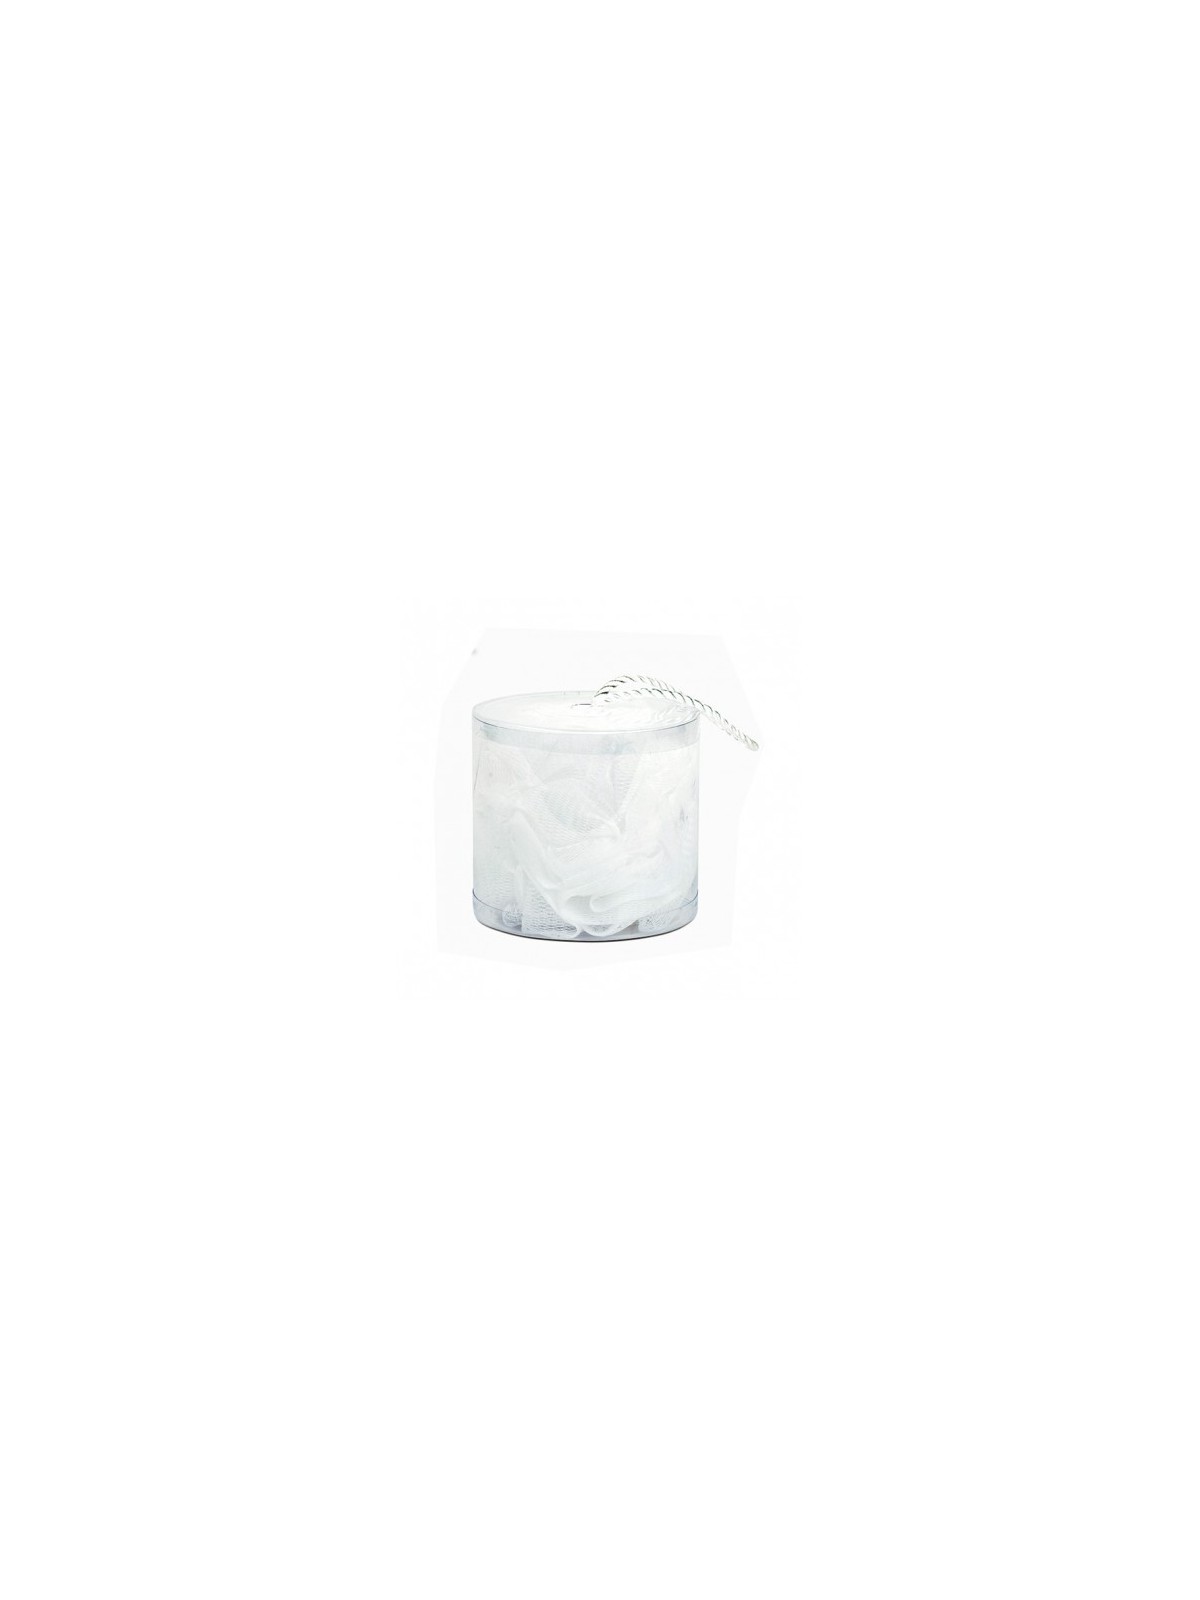 Comprar Esponja de baño malla blanca Bifull en Inicio por sólo 2,54 € o un precio específico de 2,29 € en Thalie Care